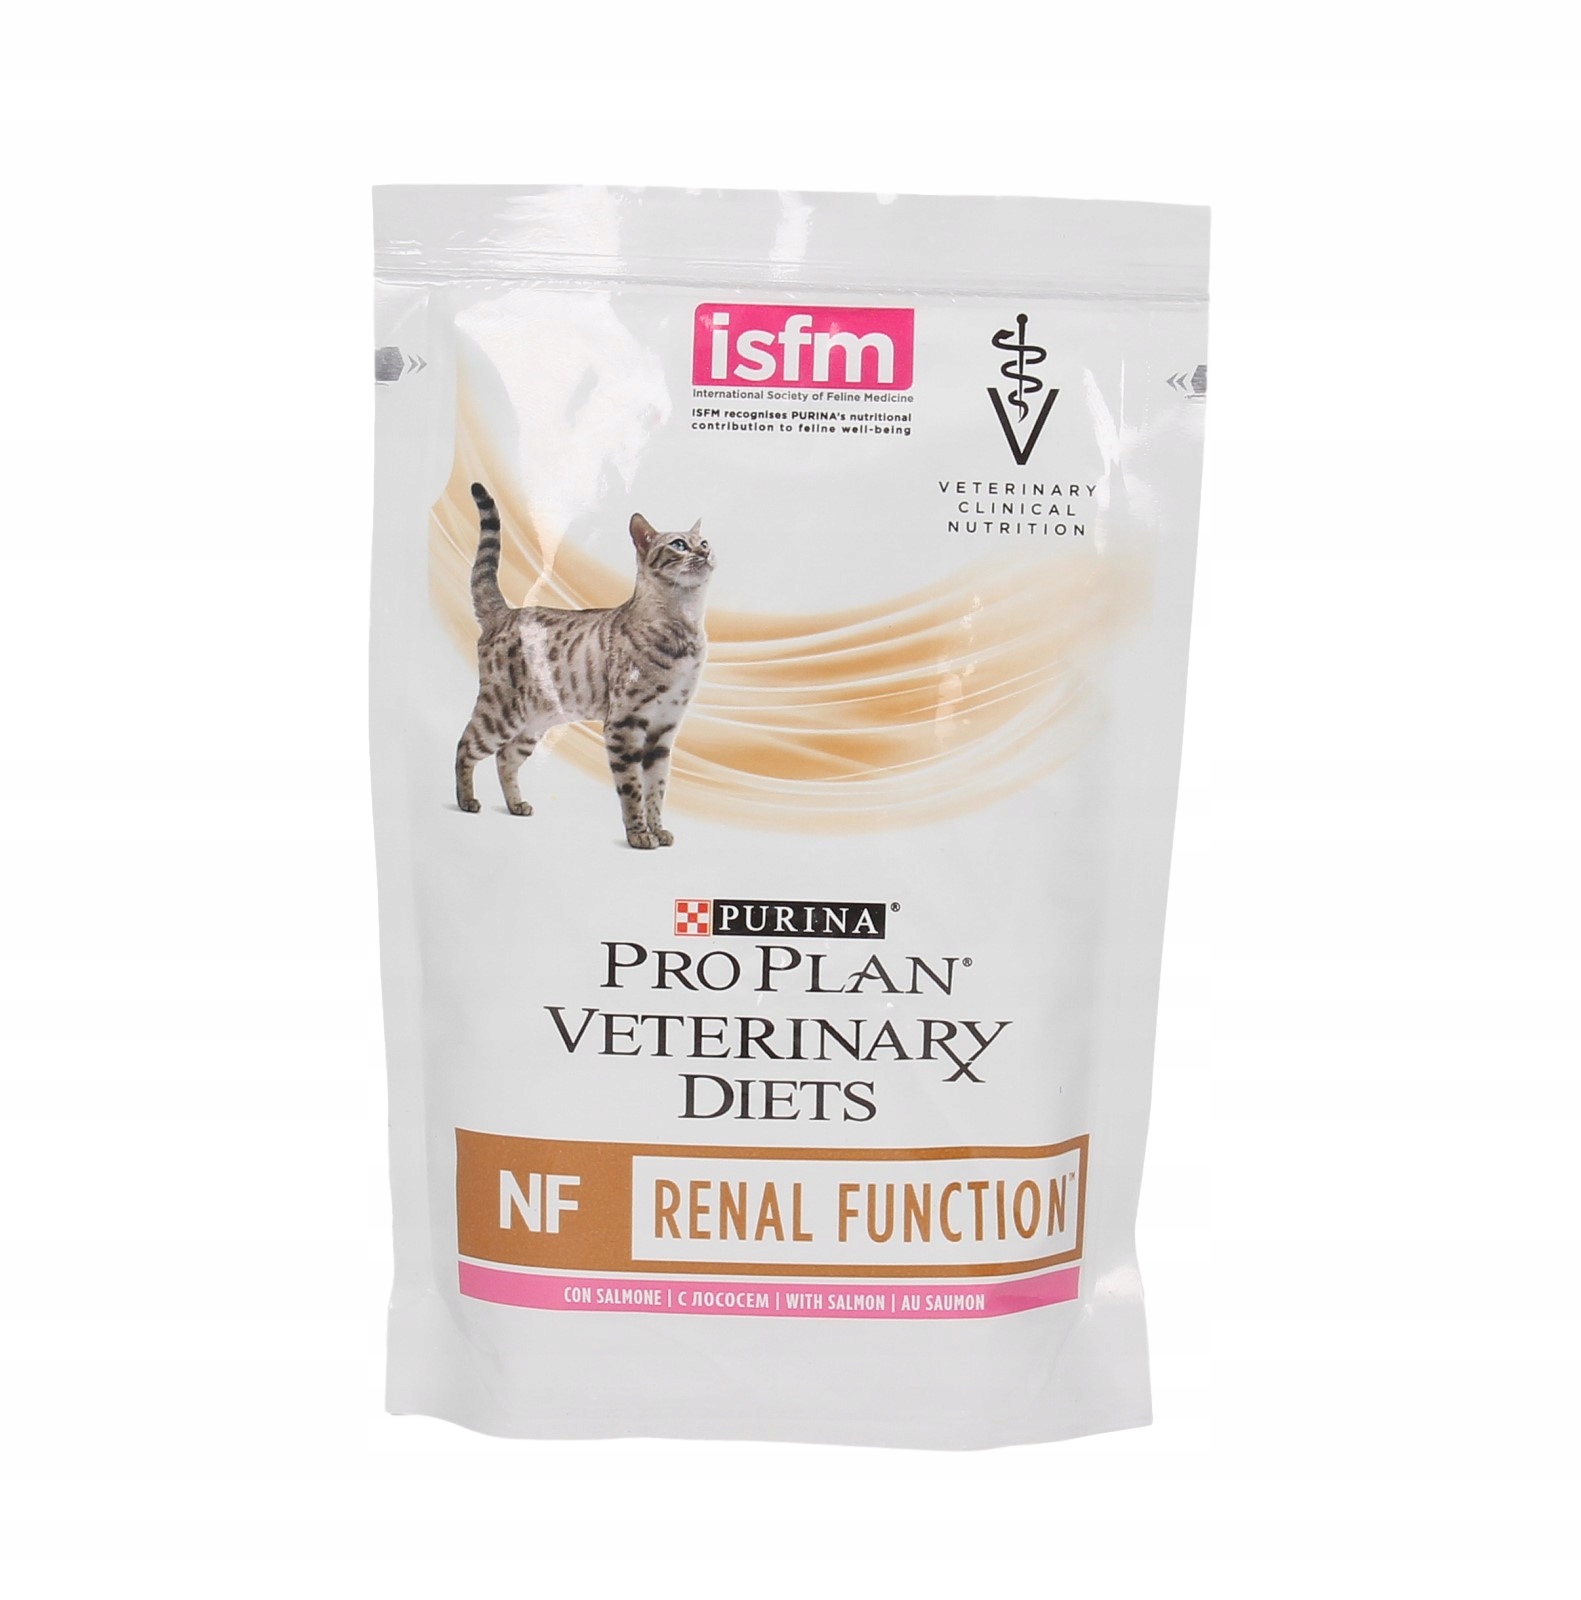 Корм для кошек pro plan nf. Renal Purina Pro Plan для кошек Veterinary Diets. Pro Plan renal пауч. NF renal function корм для кошек. Пурина корм для кошек renal function.